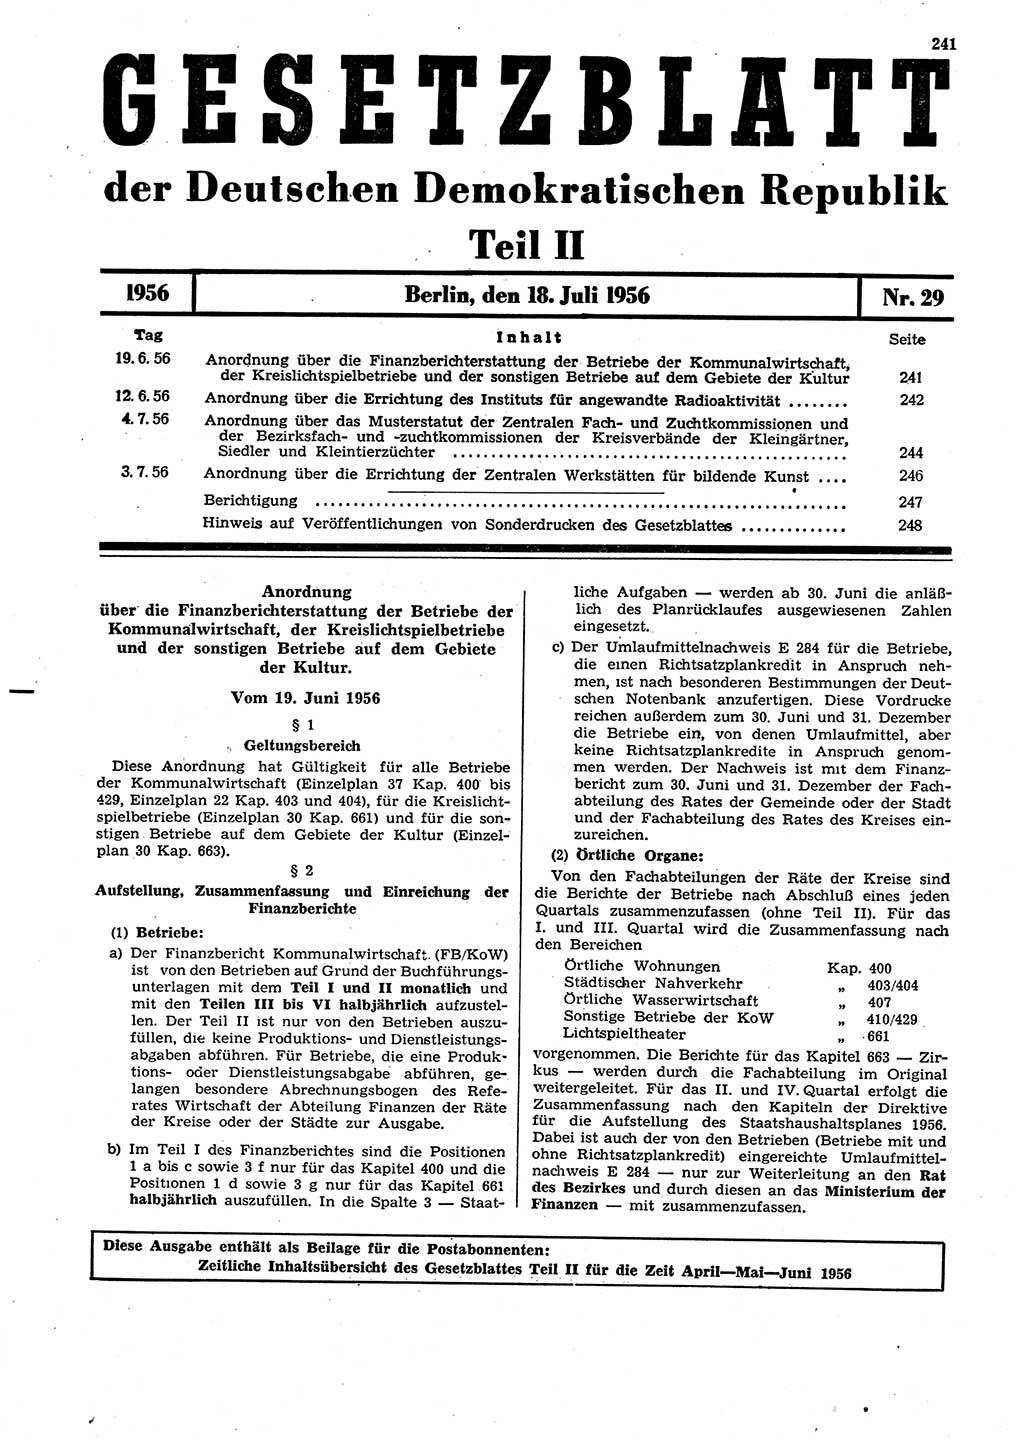 Gesetzblatt (GBl.) der Deutschen Demokratischen Republik (DDR) Teil ⅠⅠ 1956, Seite 241 (GBl. DDR ⅠⅠ 1956, S. 241)